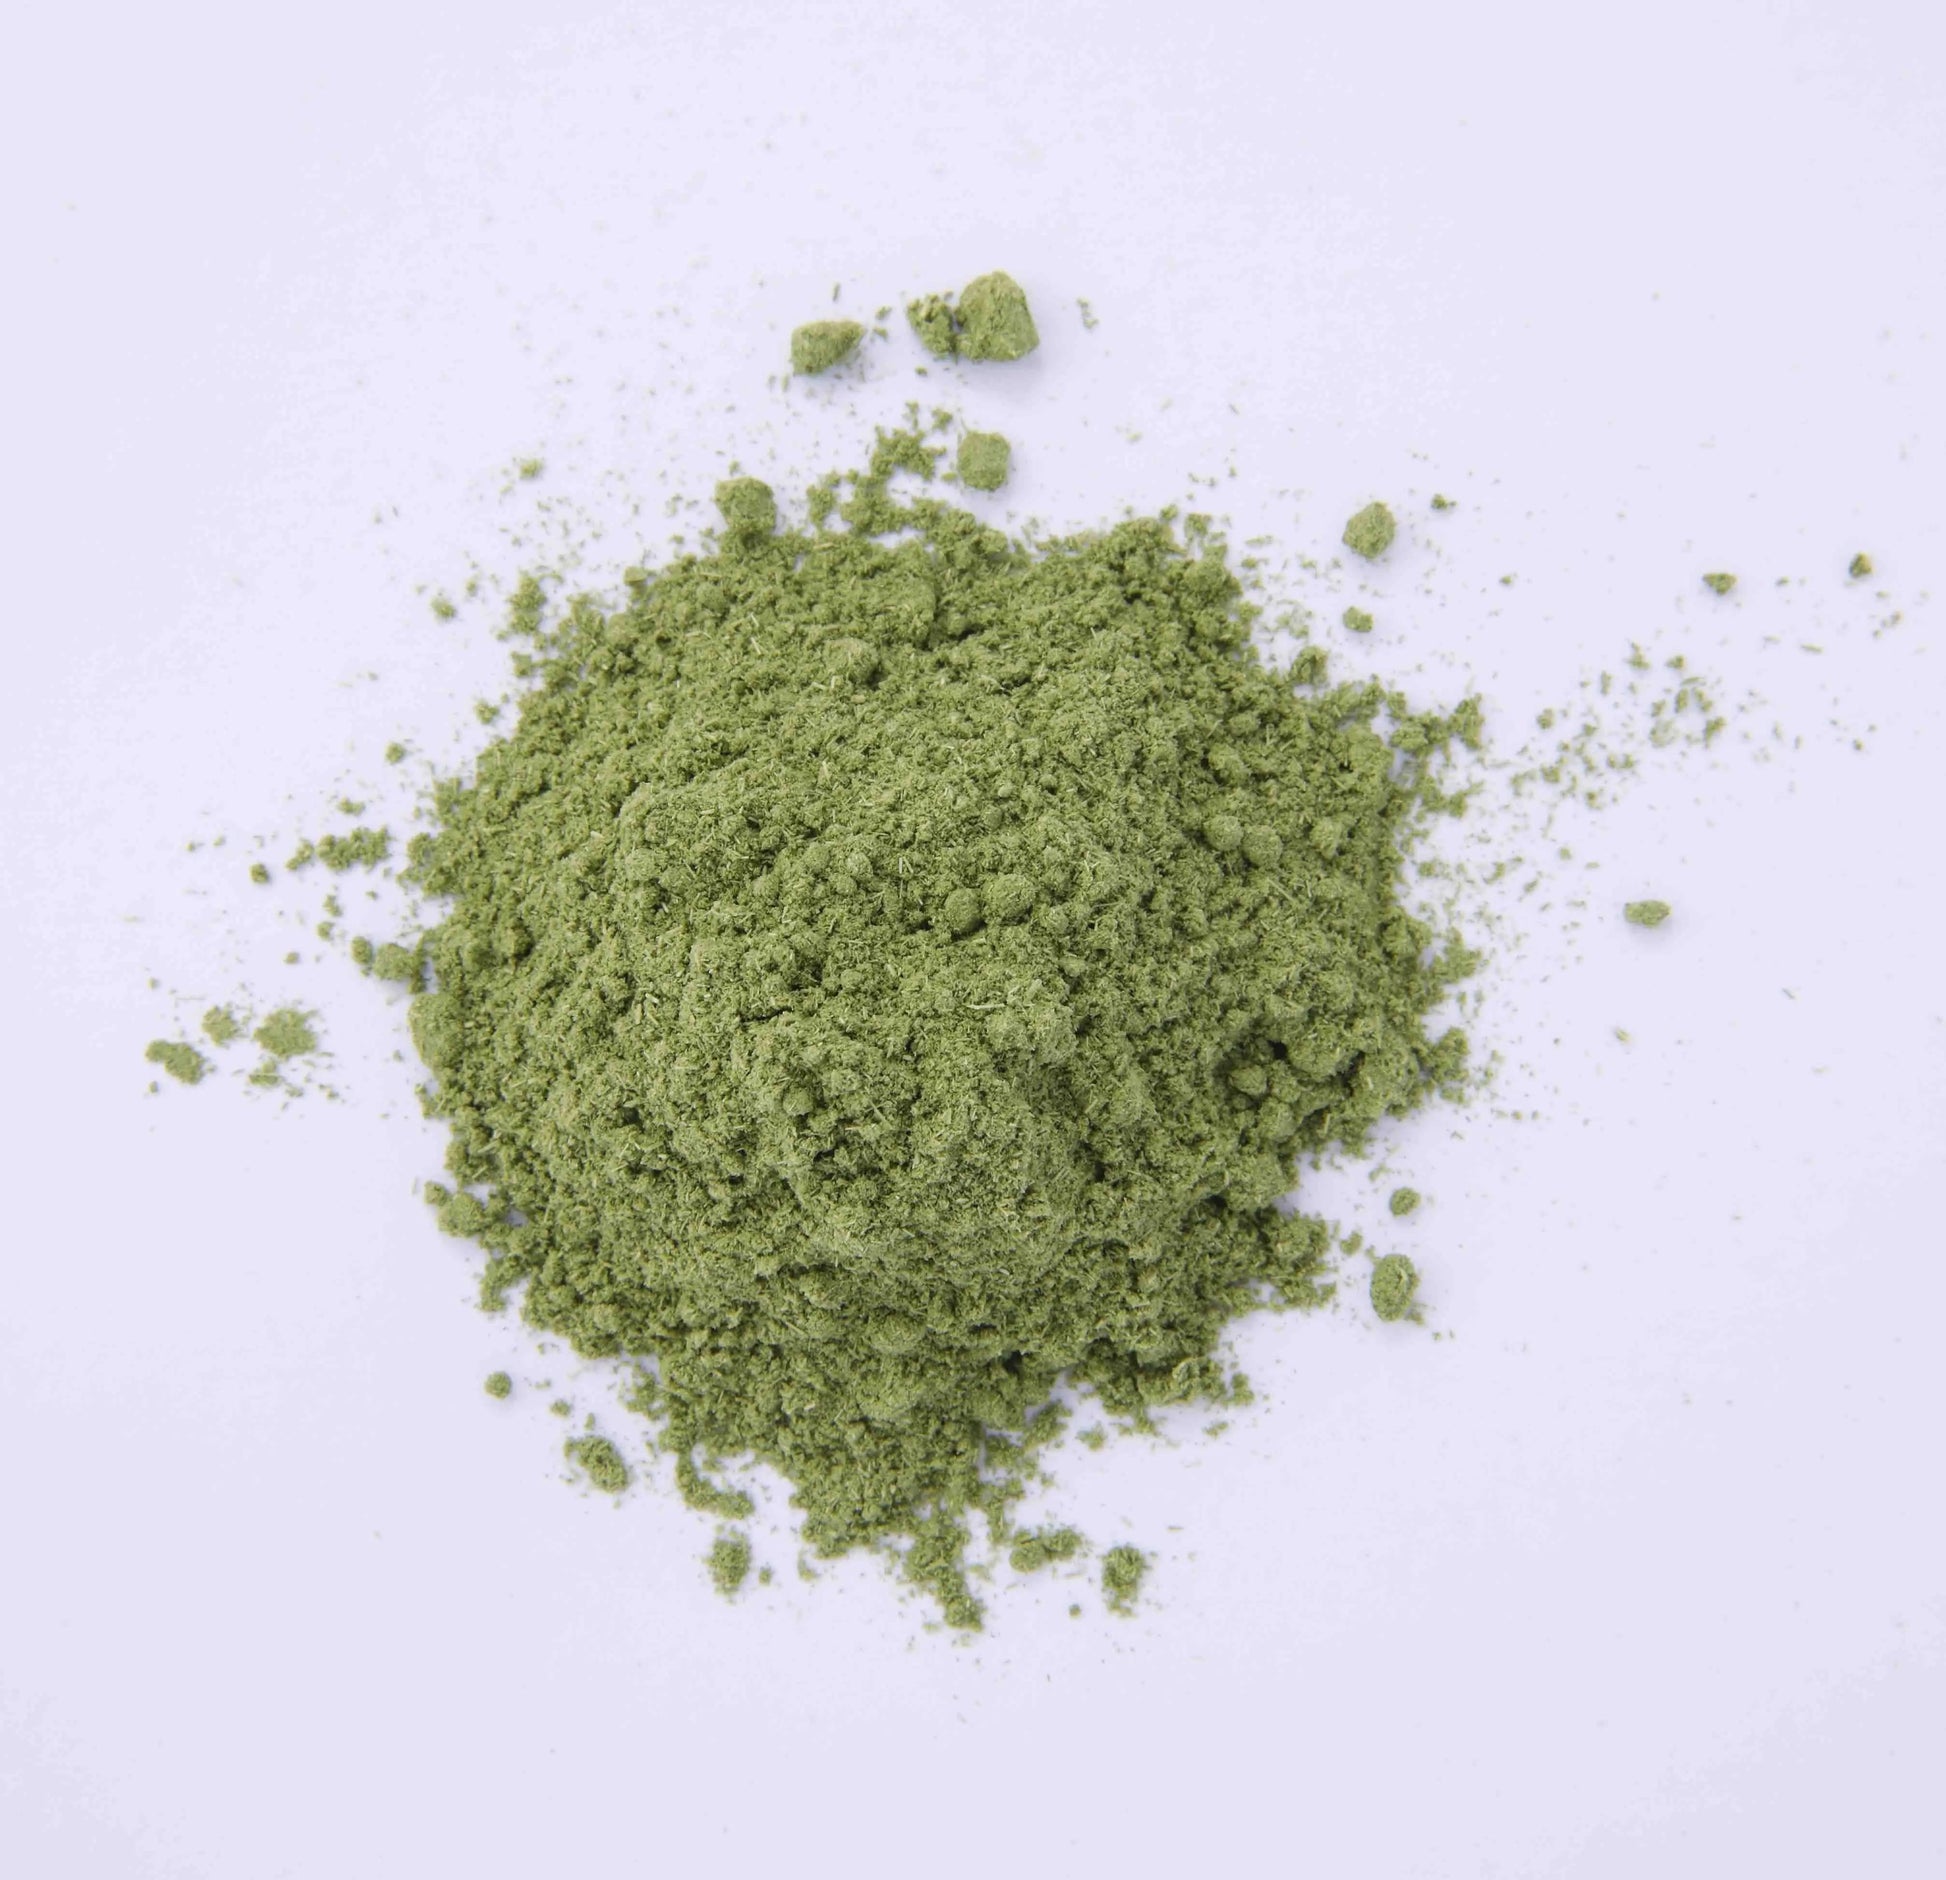 pesticide-free-lemongrass-greentea-powder-kampostation